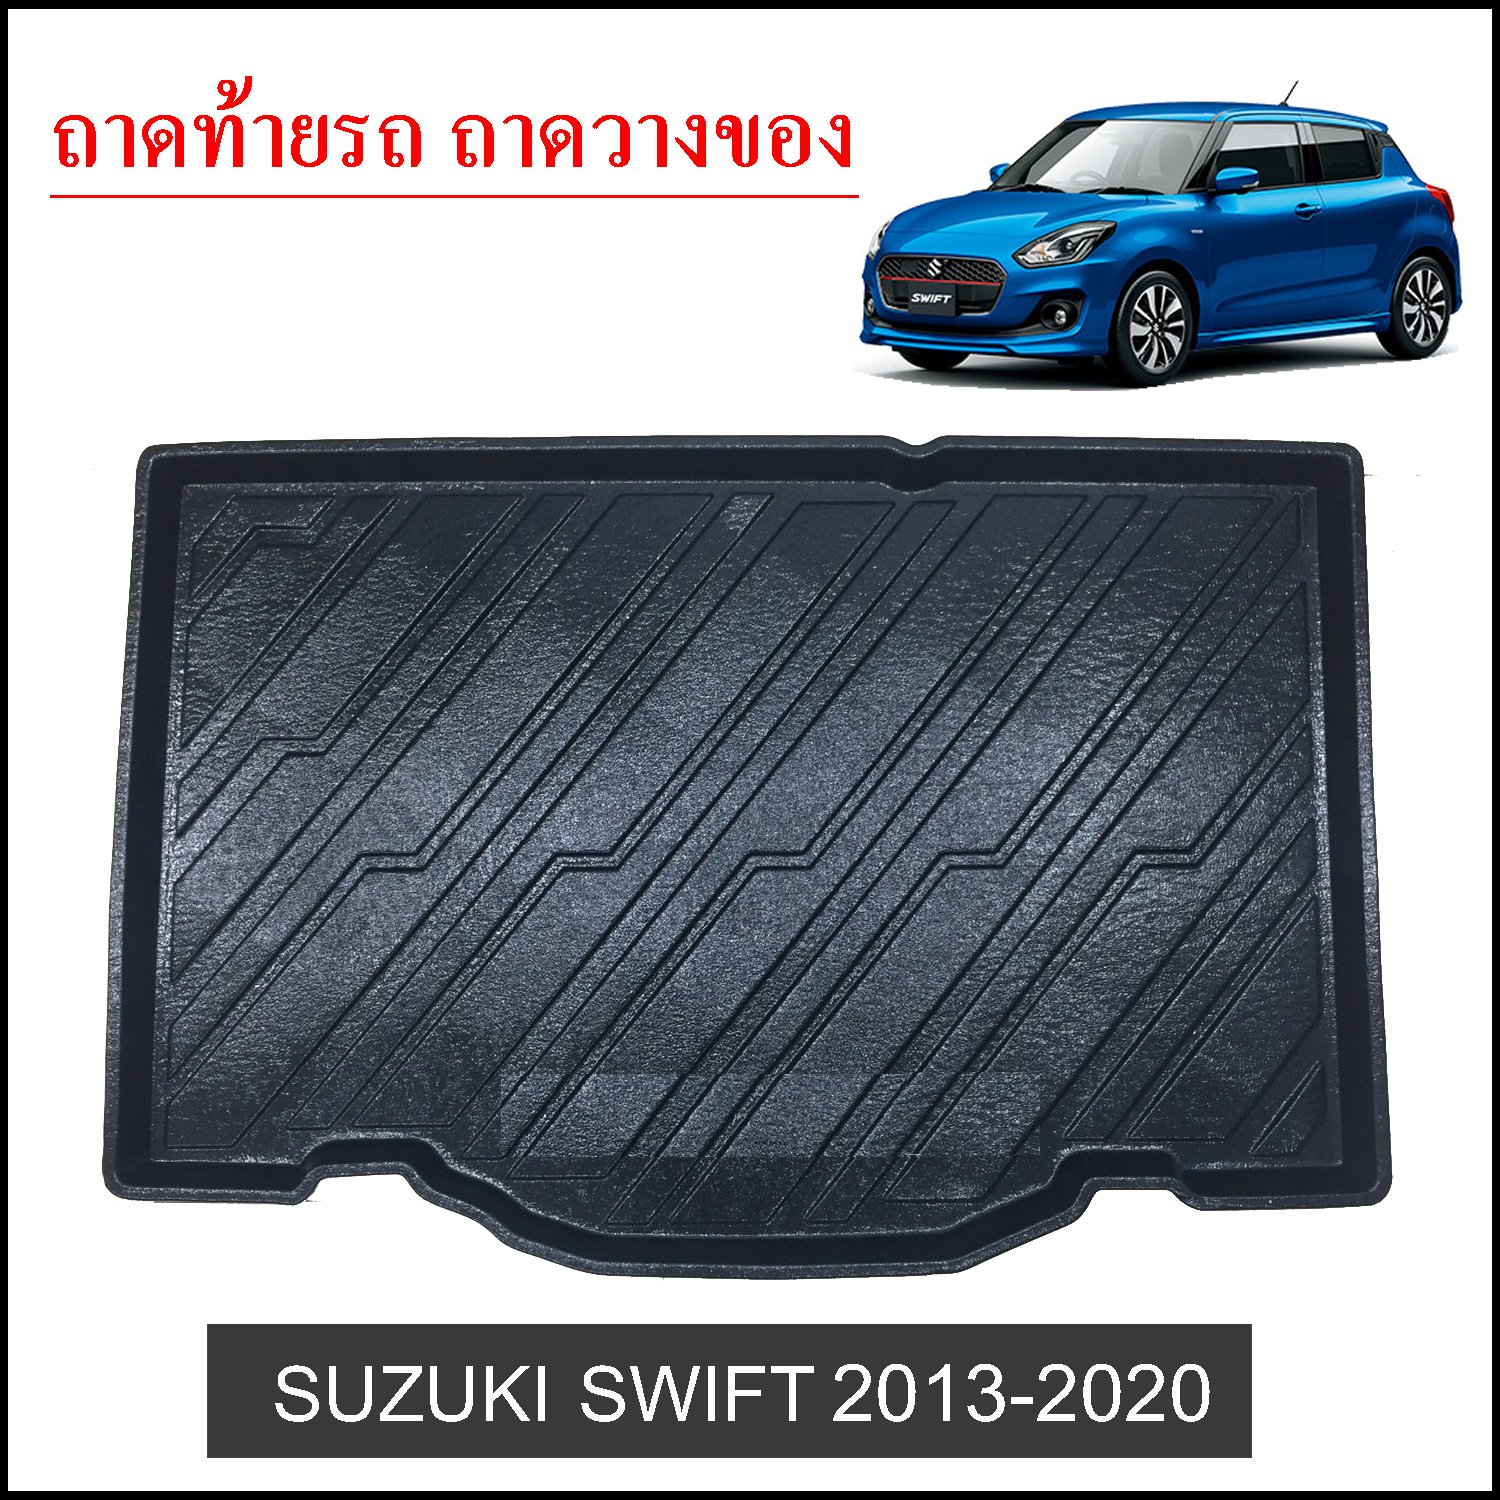 ถาดท้ายวางของ Suzuki Swift 2018-2020